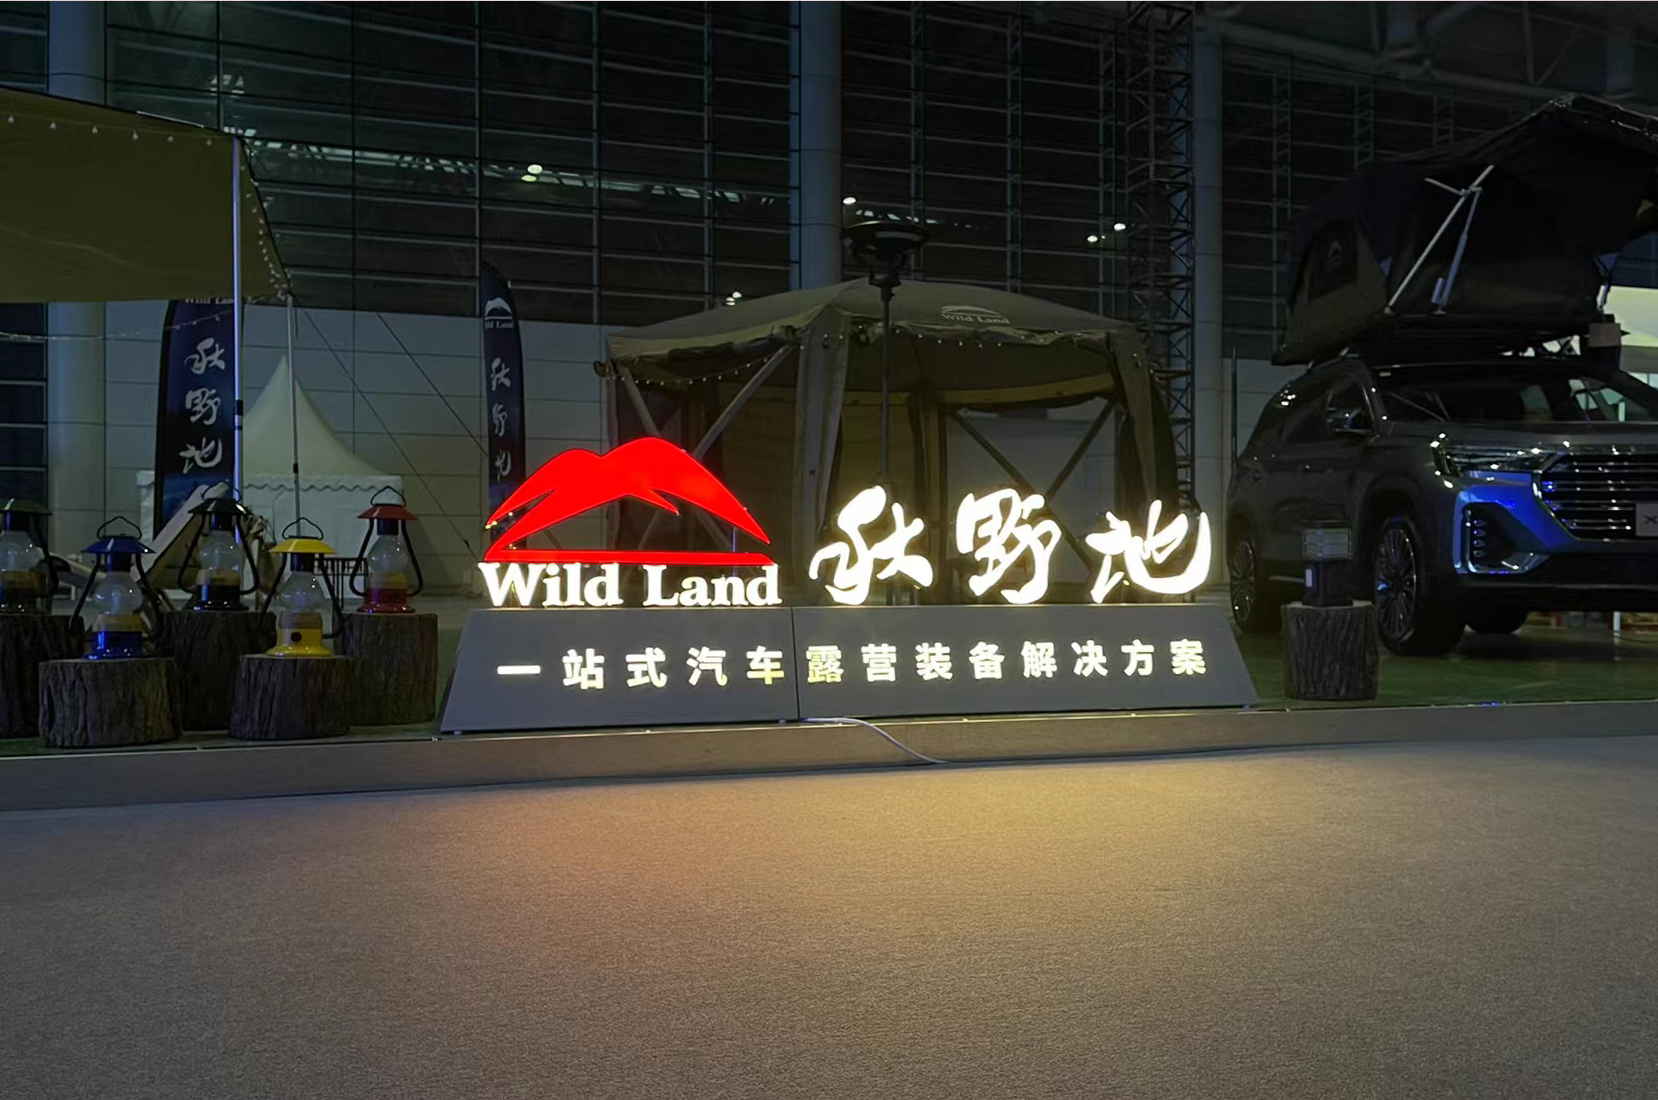 Wild Land: សន្និសីទទេសចរណ៍ + លើកទី 2 របស់ JETOUR Auto បានឈានដល់ការបញ្ចប់ដោយជោគជ័យ